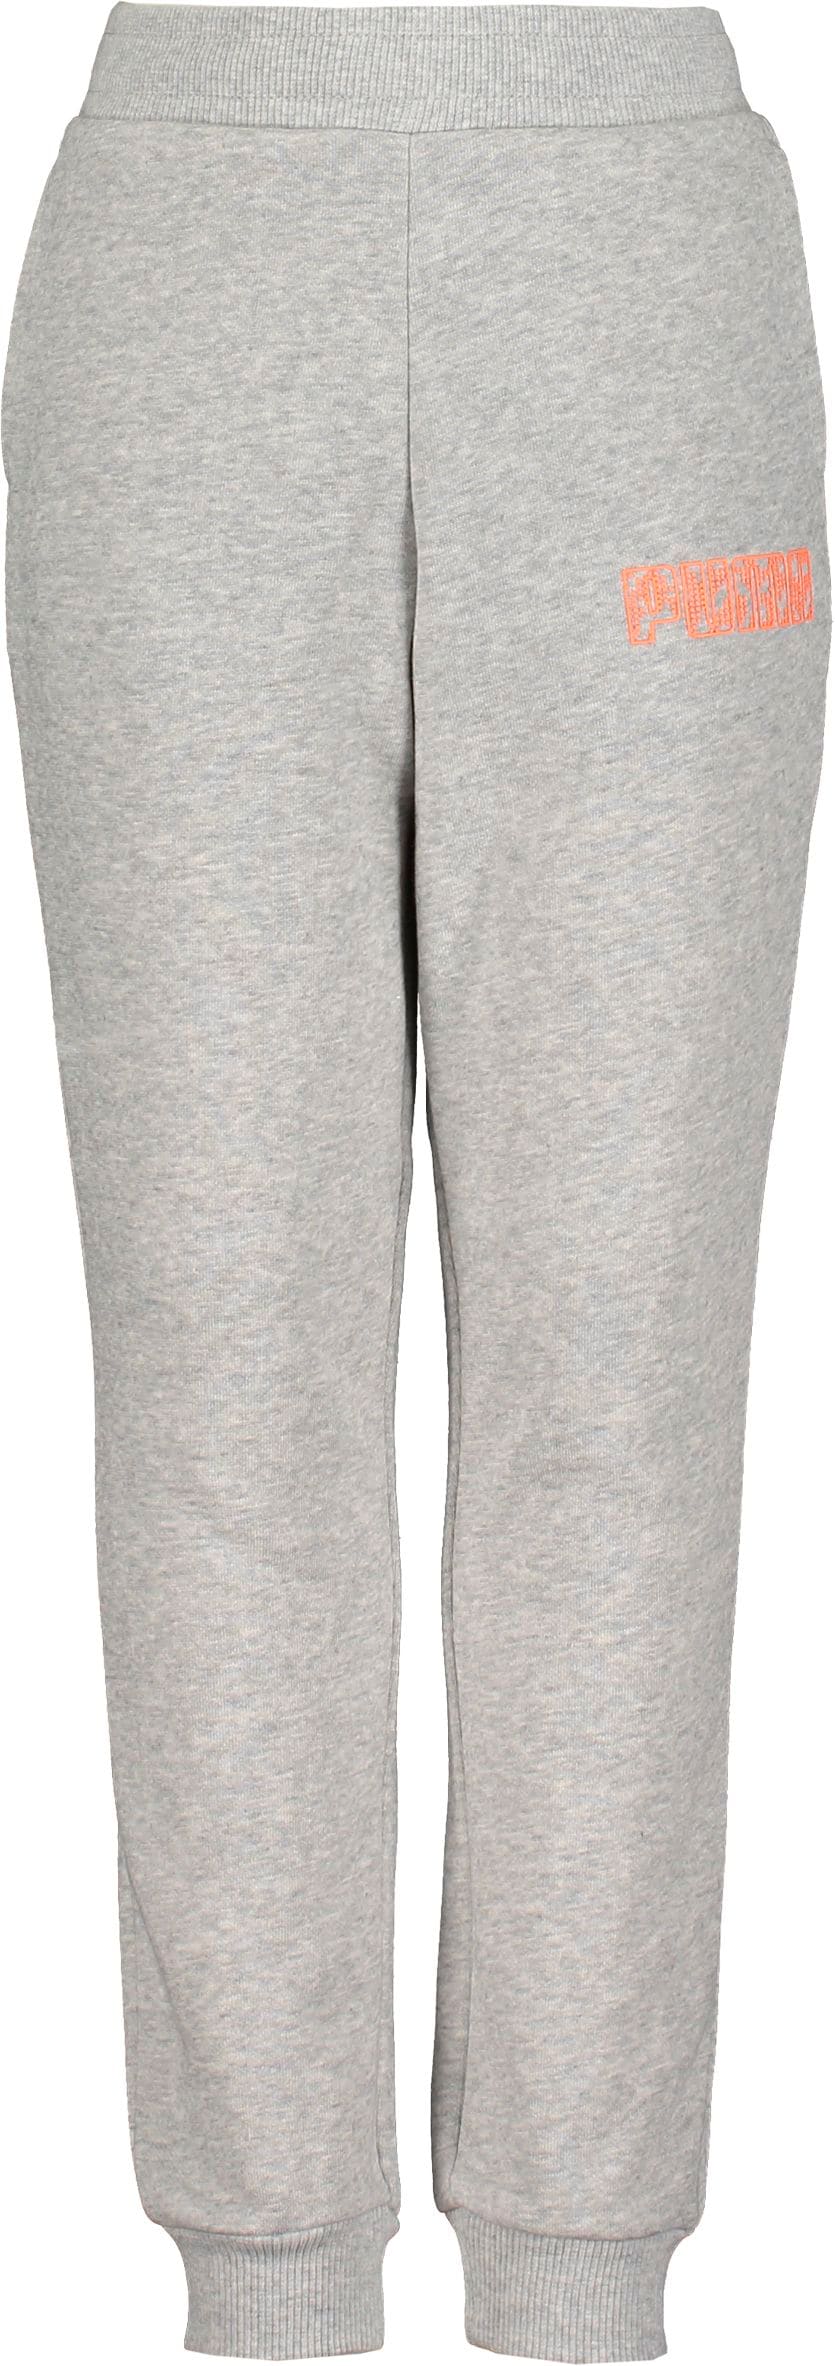 PUMA, MASS MERCHANT Style Sweatpants FL G